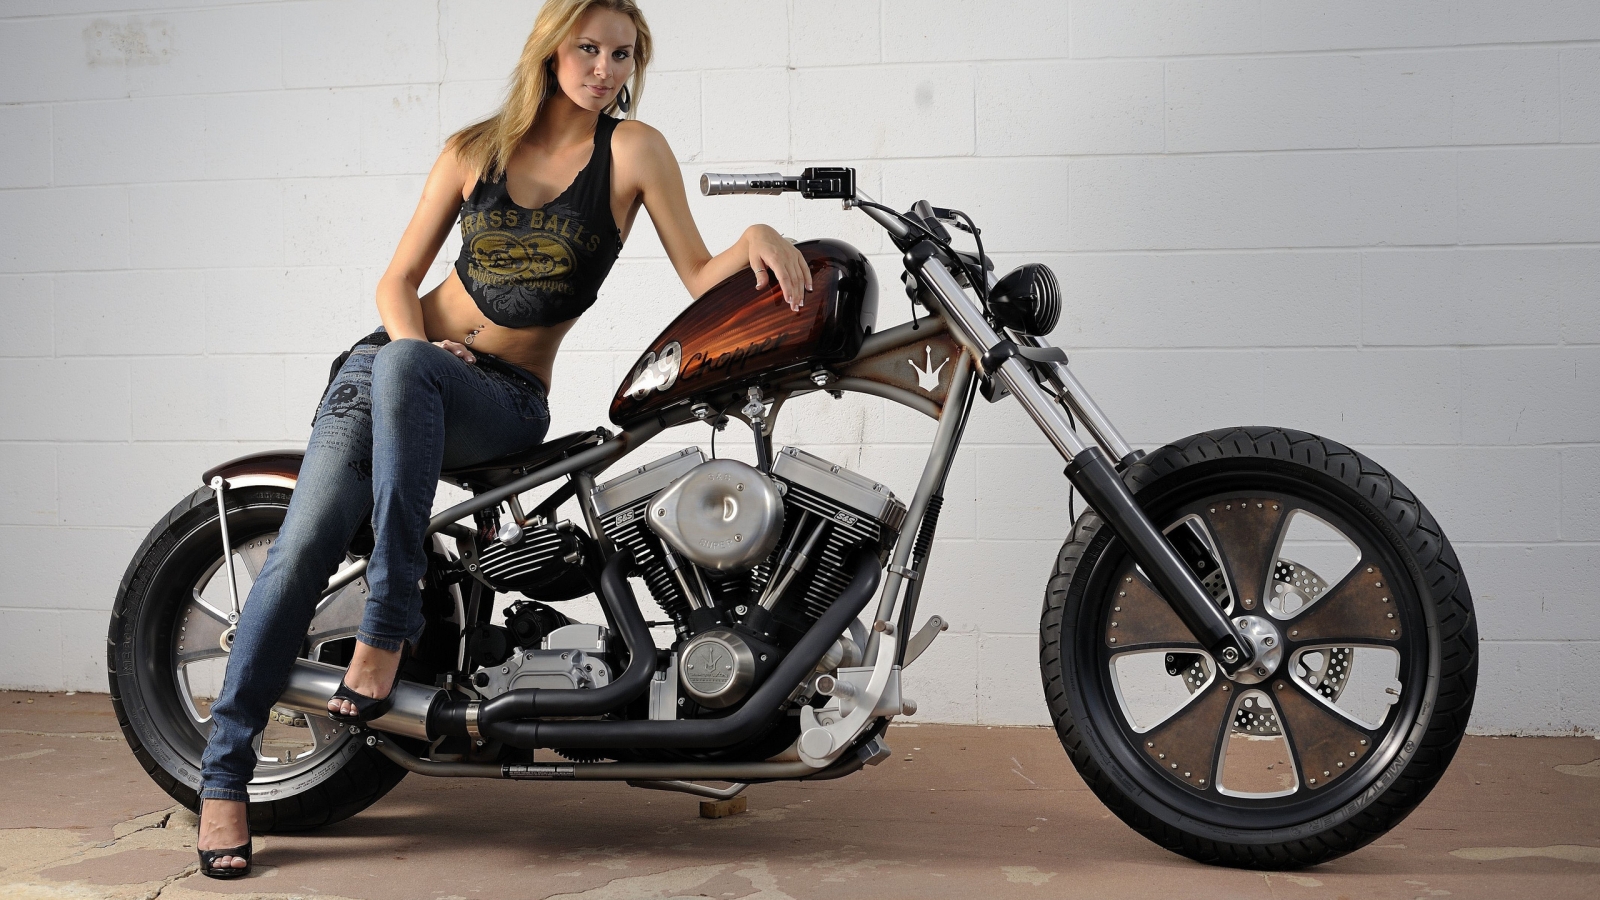 Harley Davidson Classic Bobber for 1600 x 900 HDTV resolution